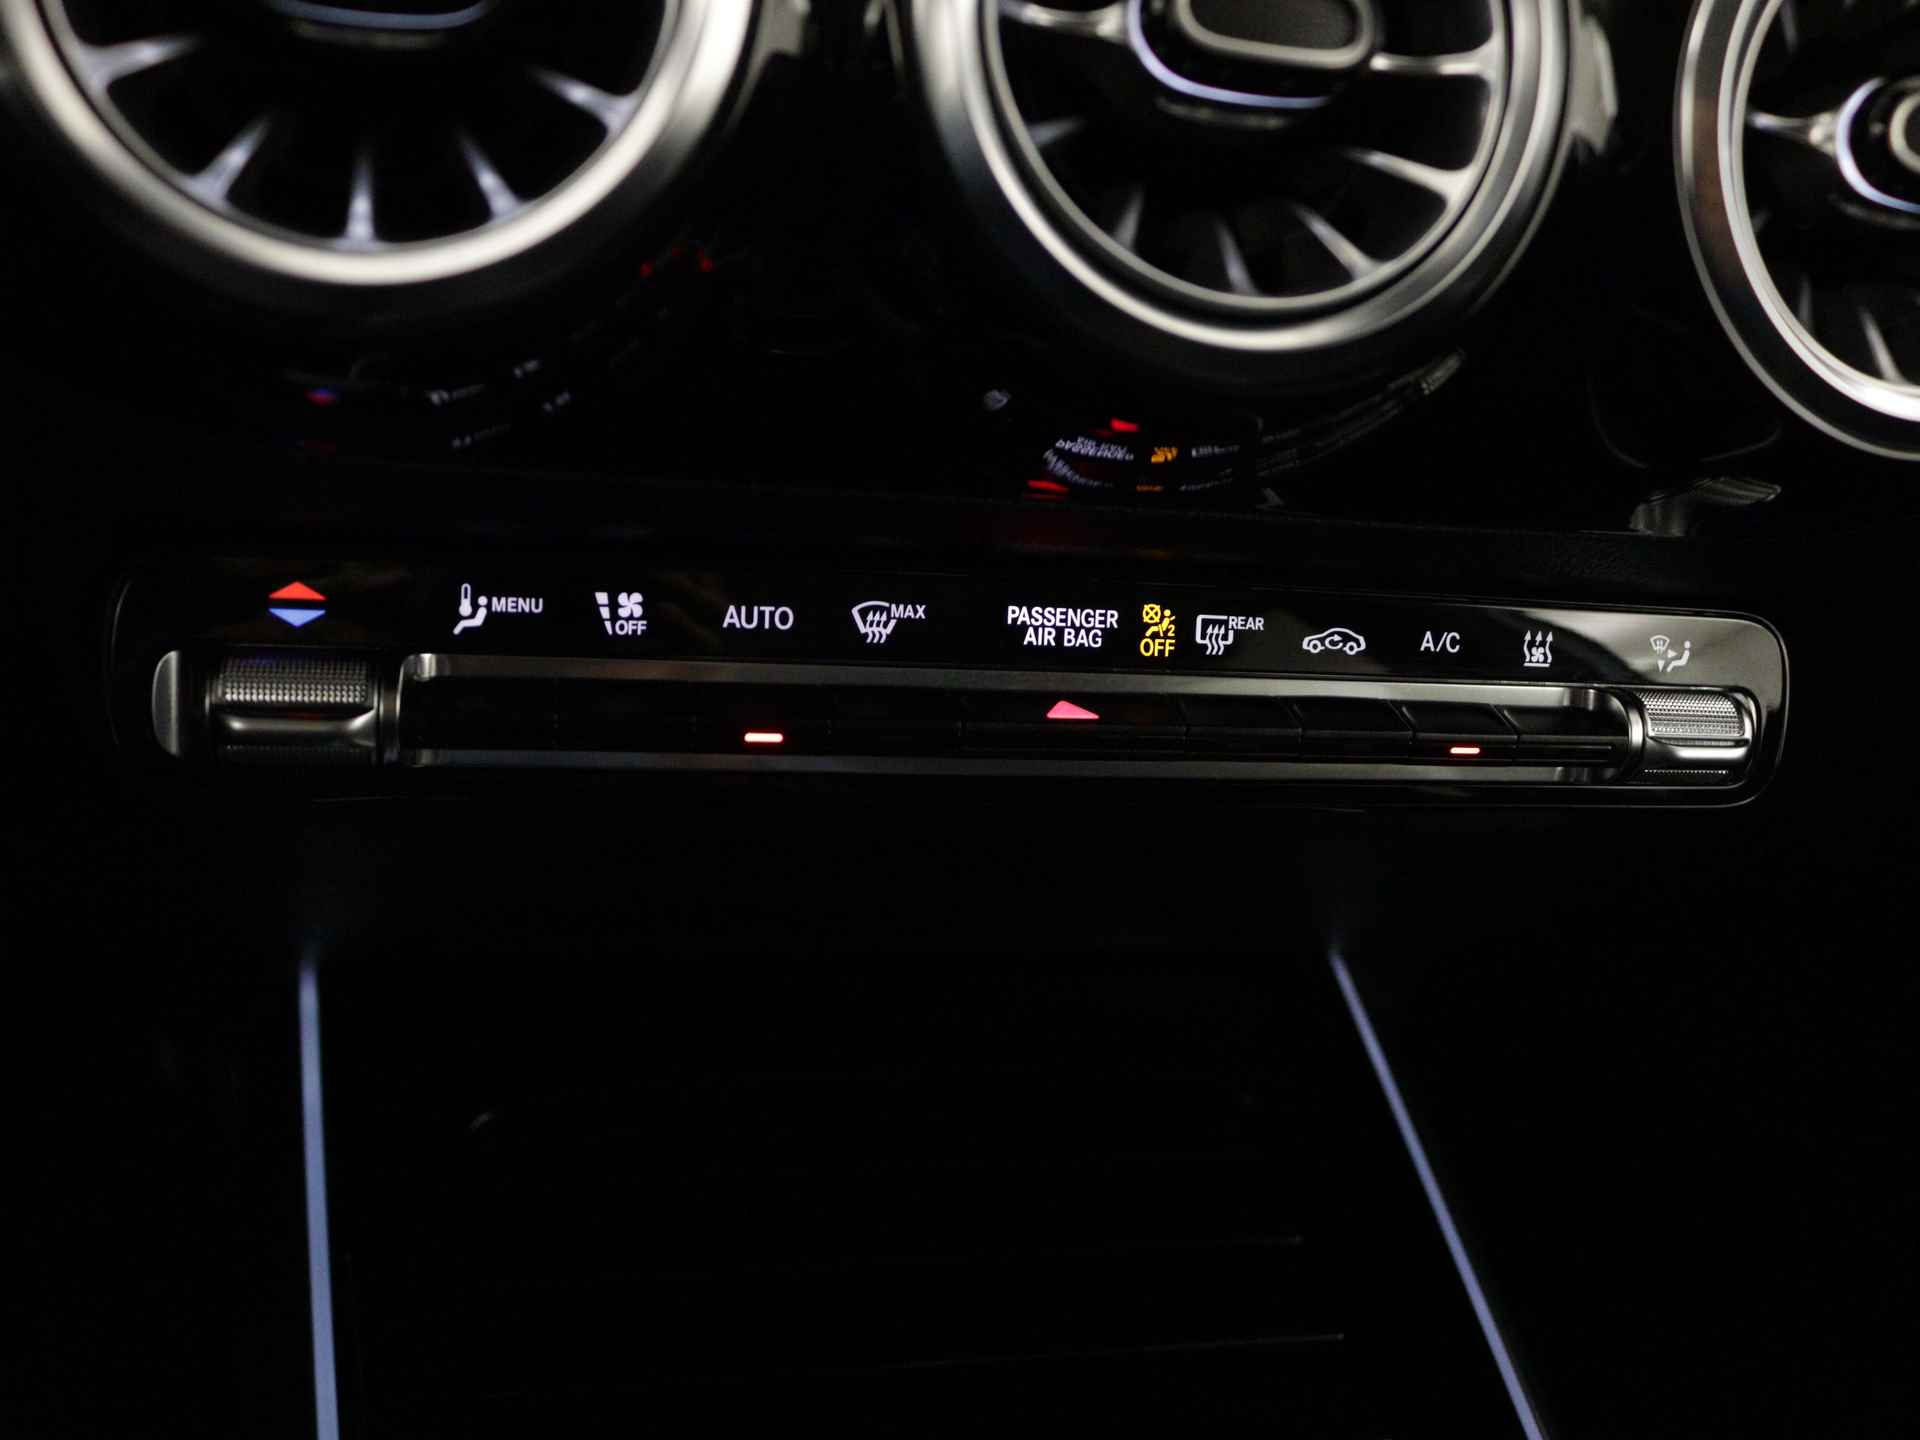 Mercedes-Benz B-Klasse 250 e AMG Line Limited Multispaaks lichtmetalen velgen | MBUX wide screen | Navigatie | Parking support | Inclusief 24 maanden Mercedes-Benz Certified garantie voor Europa. | - 12/45